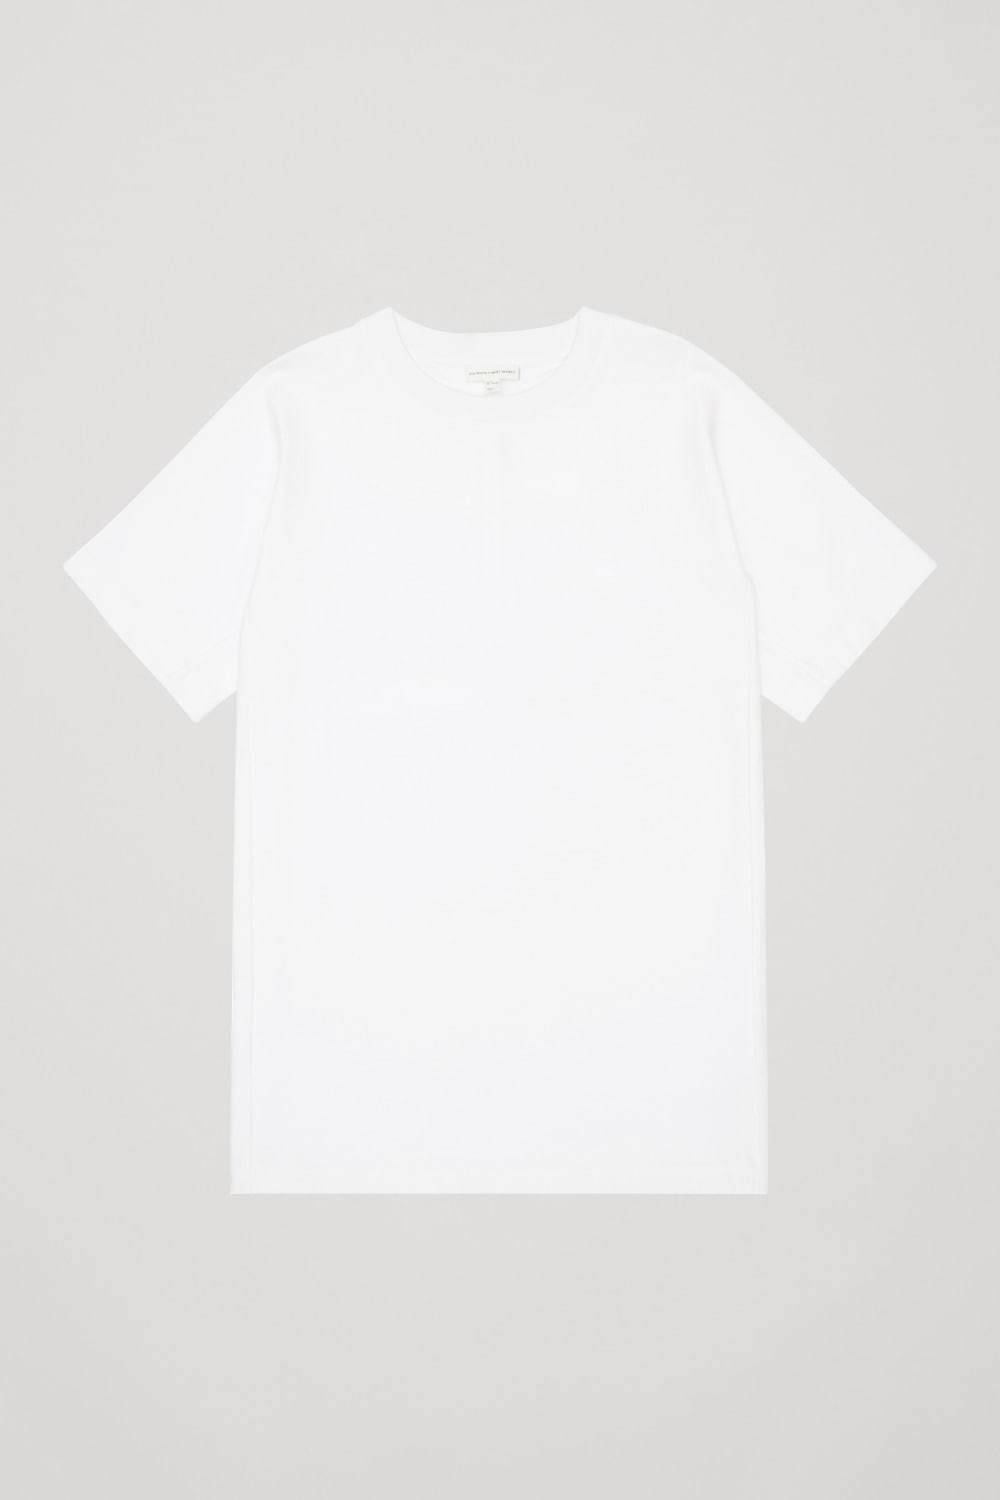 メンズ白Tシャツ＆黒Tシャツのおすすめコーデ、重ね着などおしゃれな着こなしテク＋新作も｜写真15